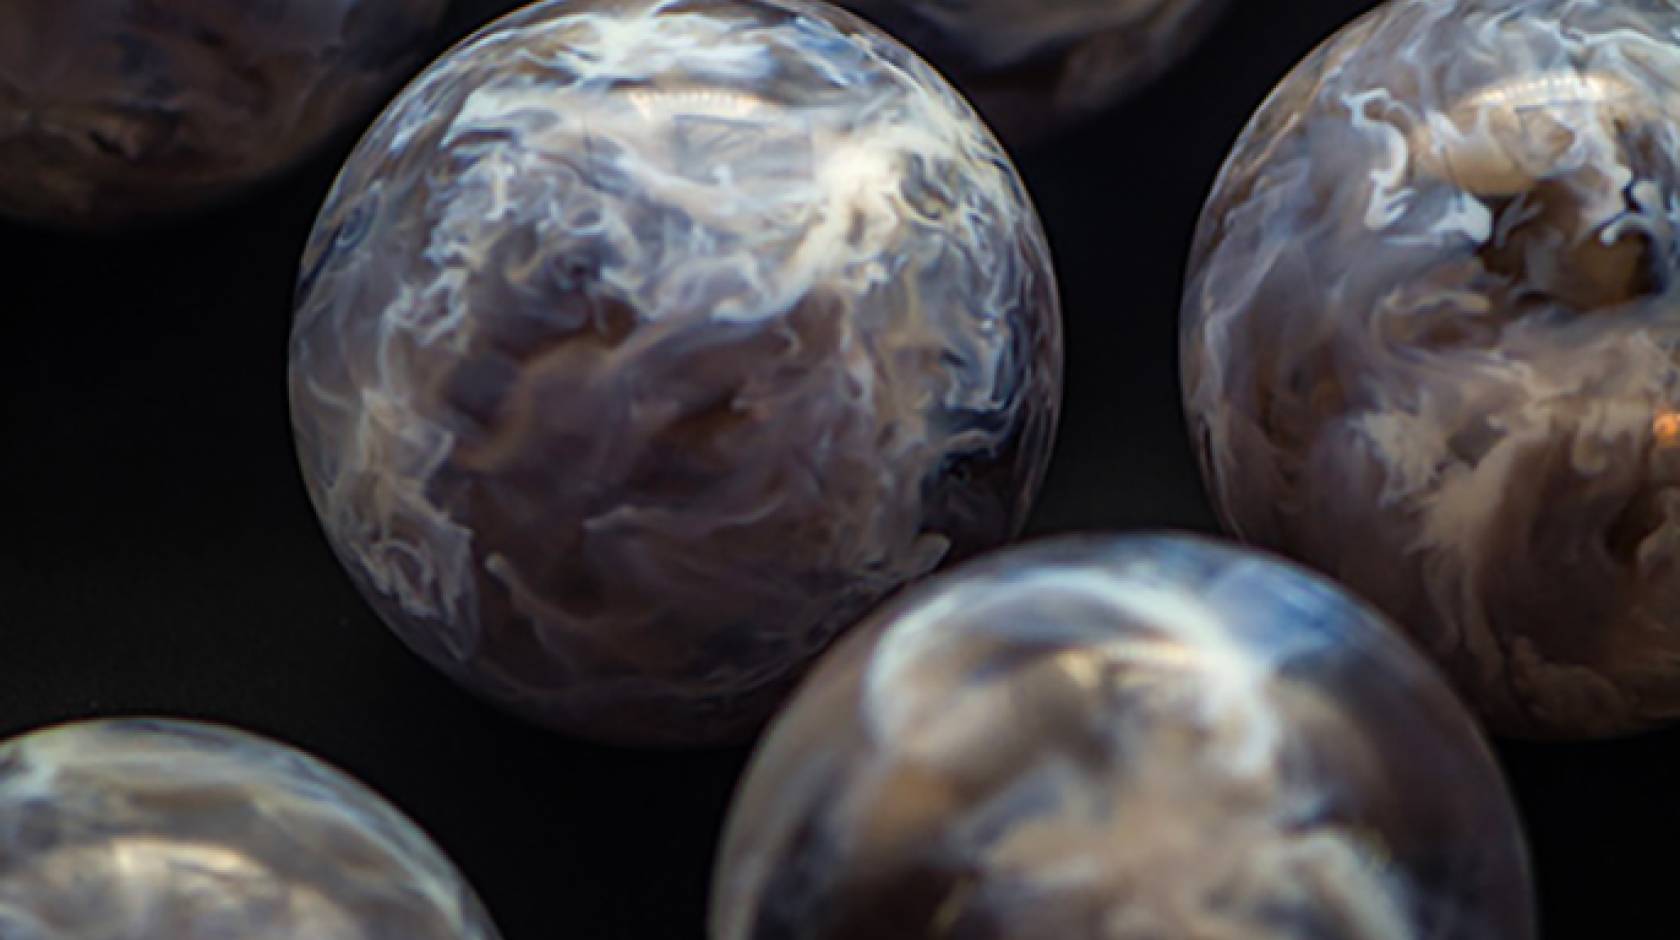 3D-printed stellar nursery spheres